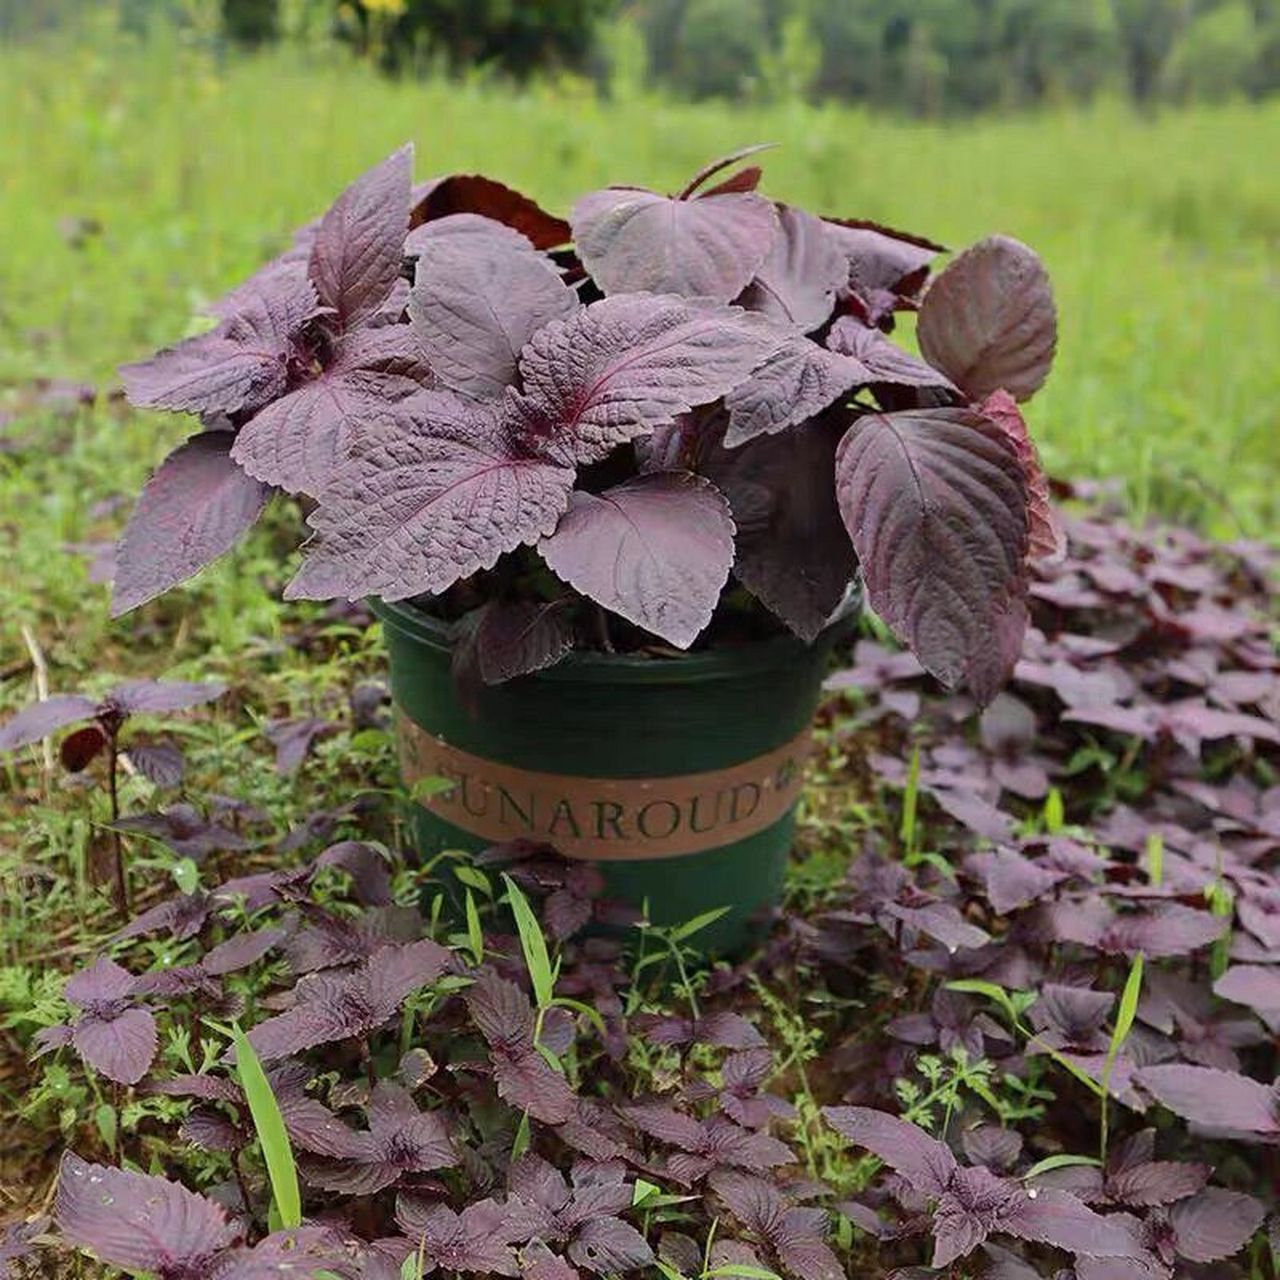 紫苏的功效与作用 紫苏为唇形科一年生草本植物